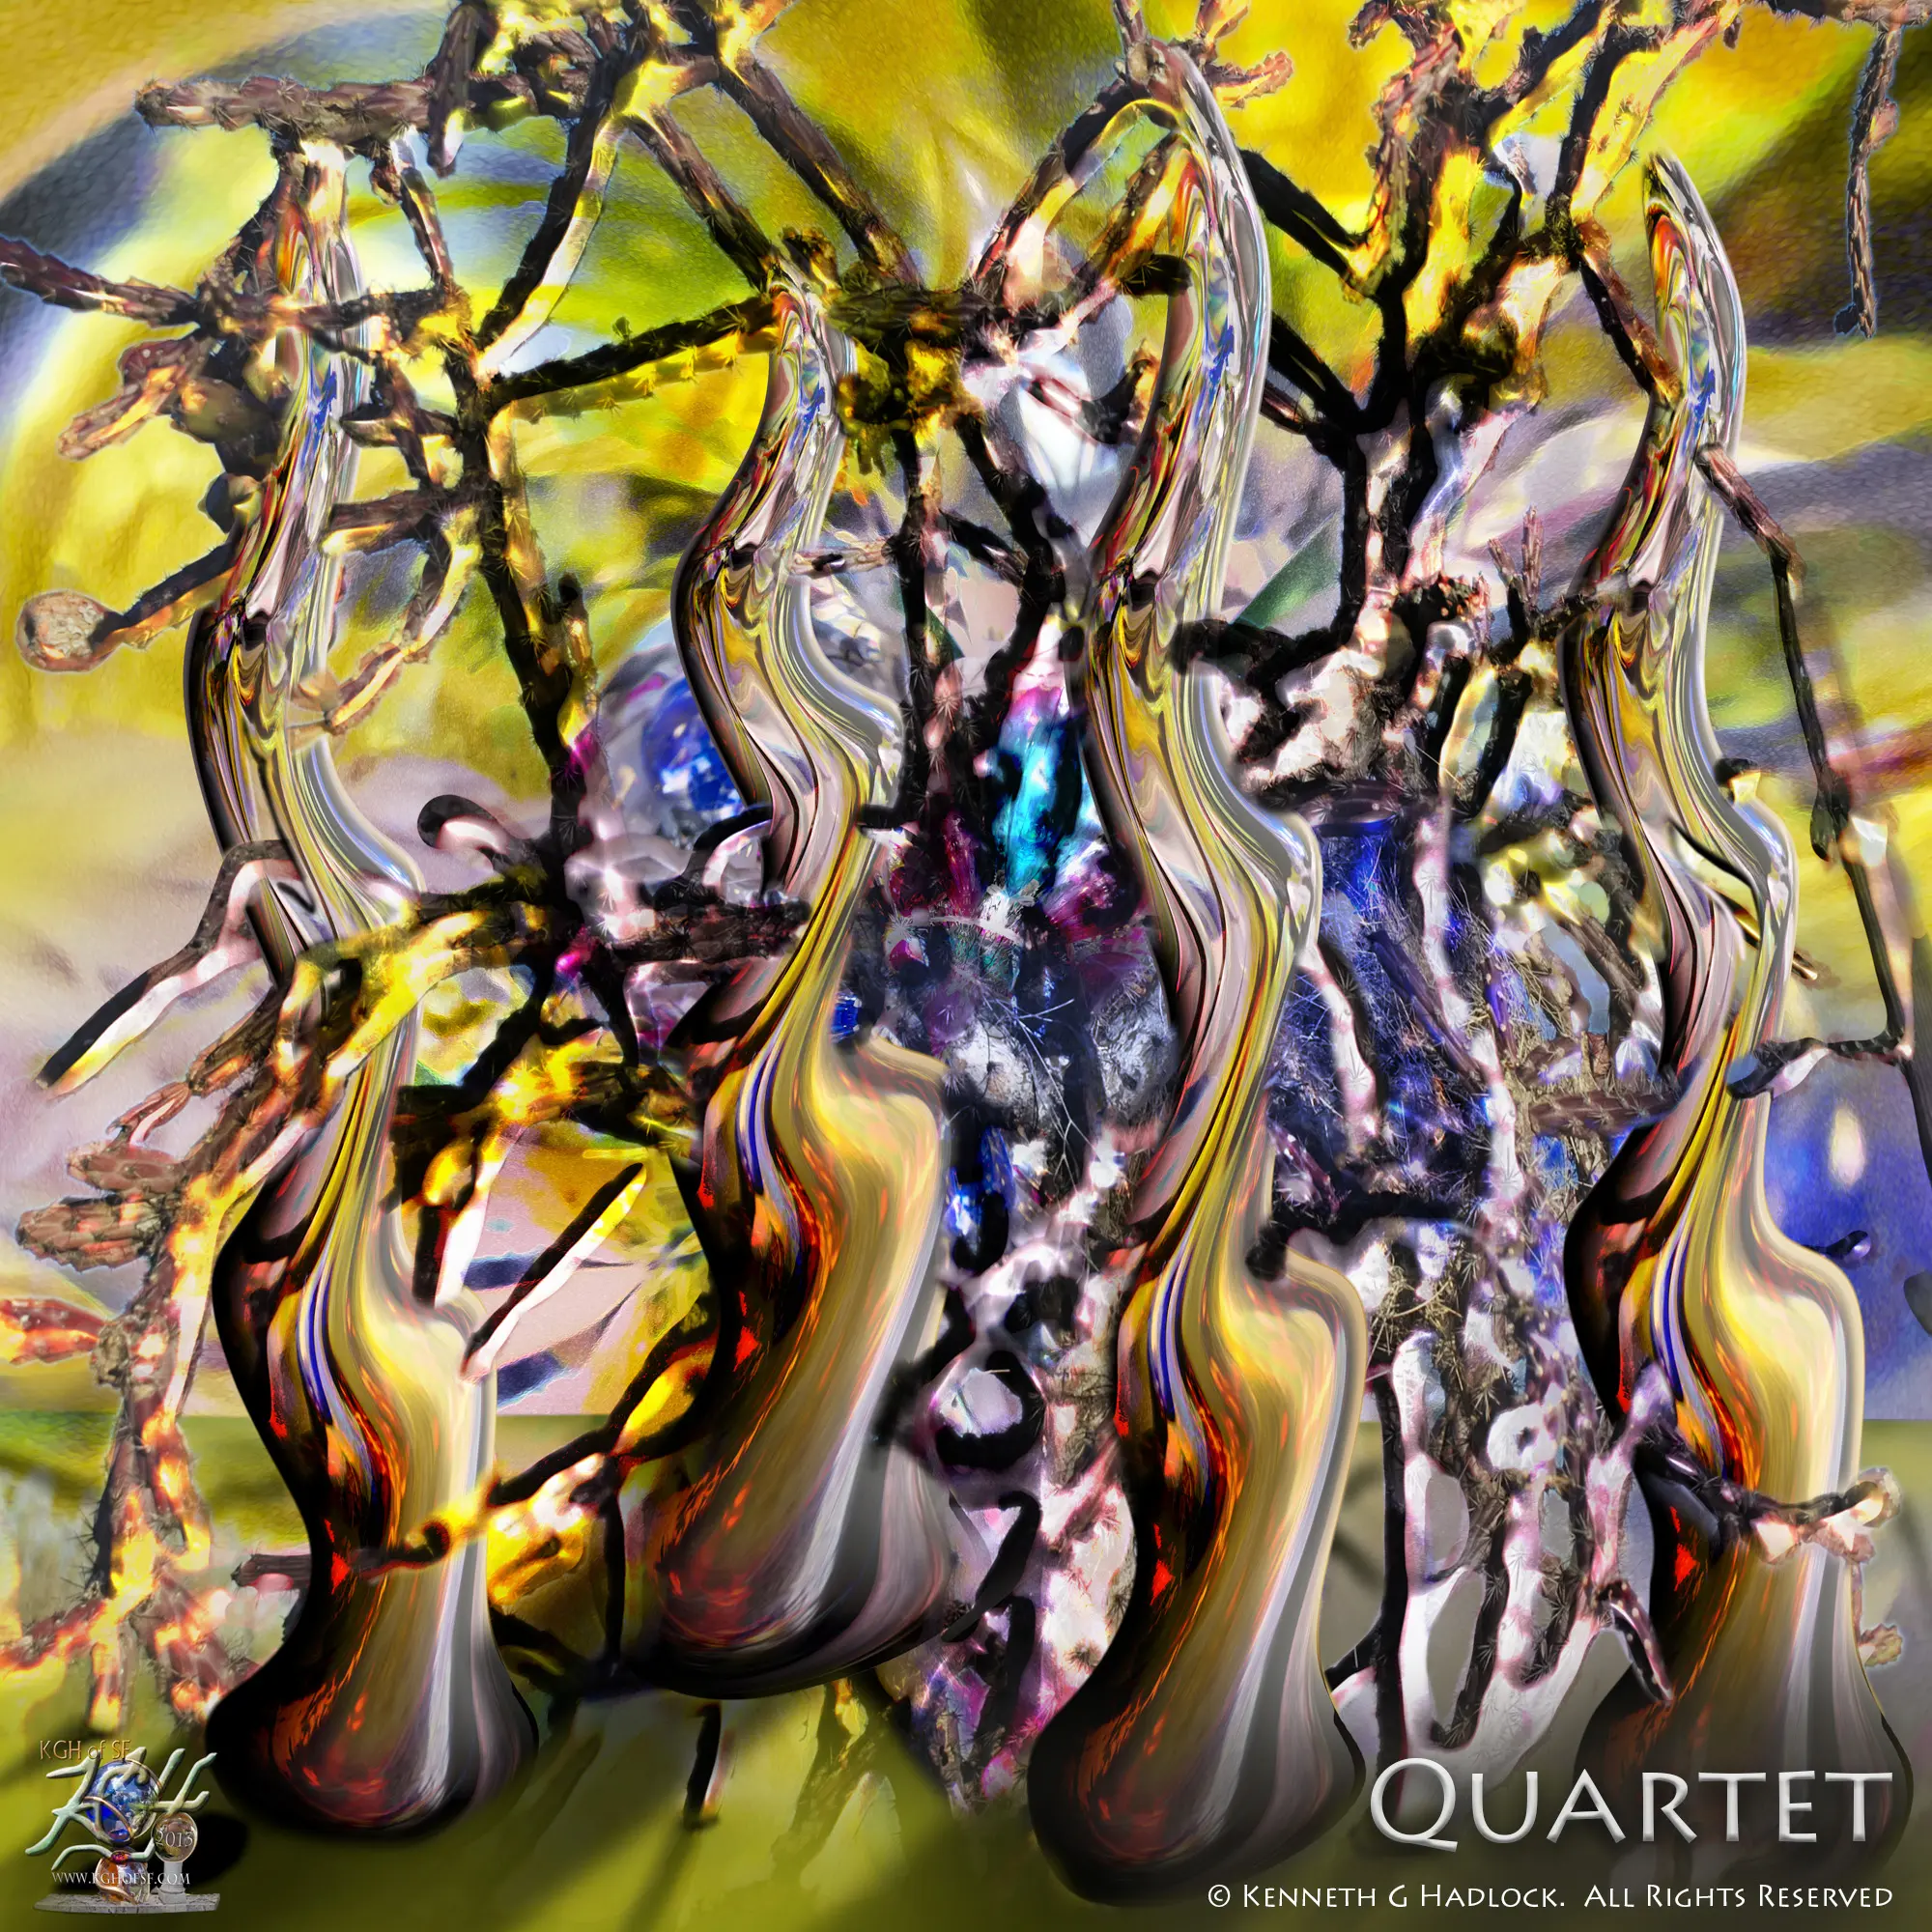 Digital Artwork - "Quartet"